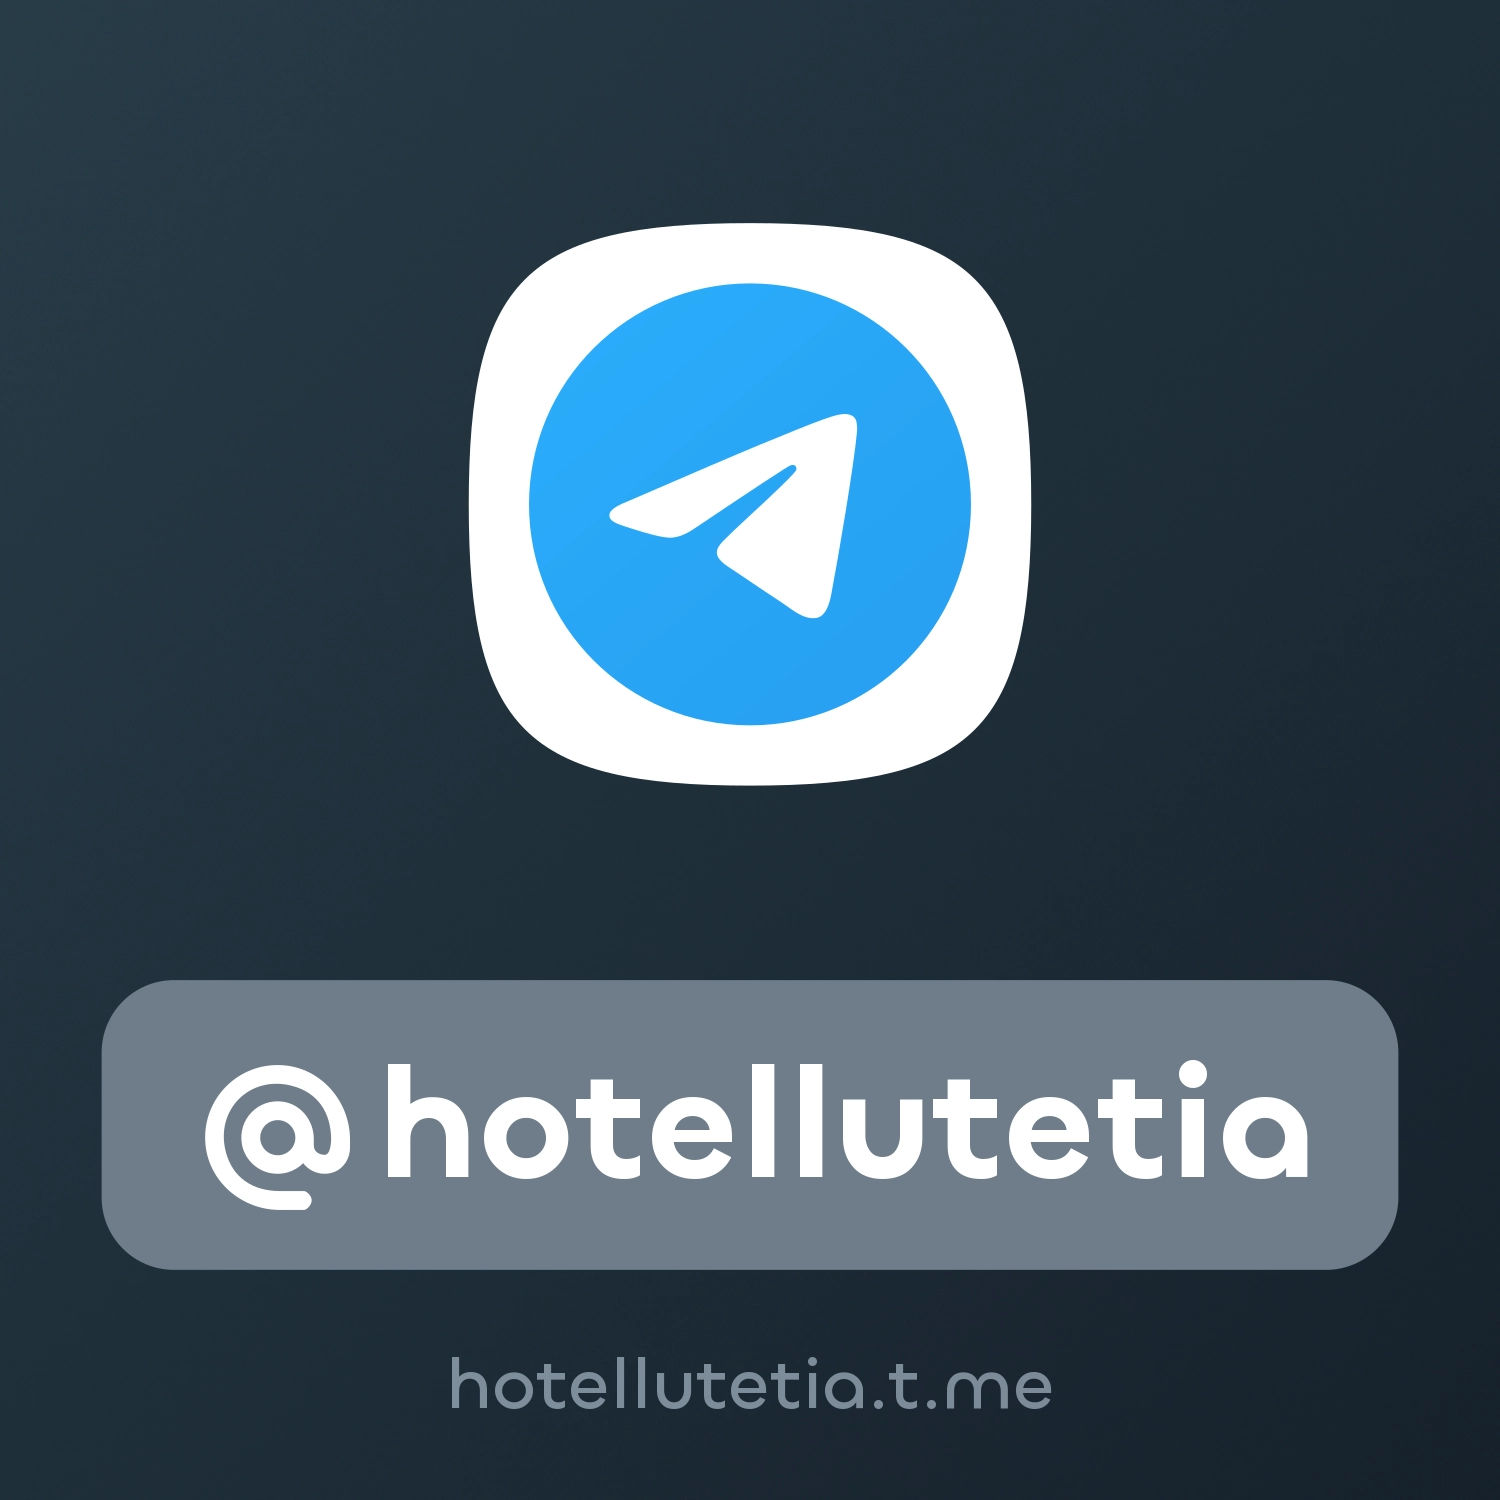 @hotellutetia